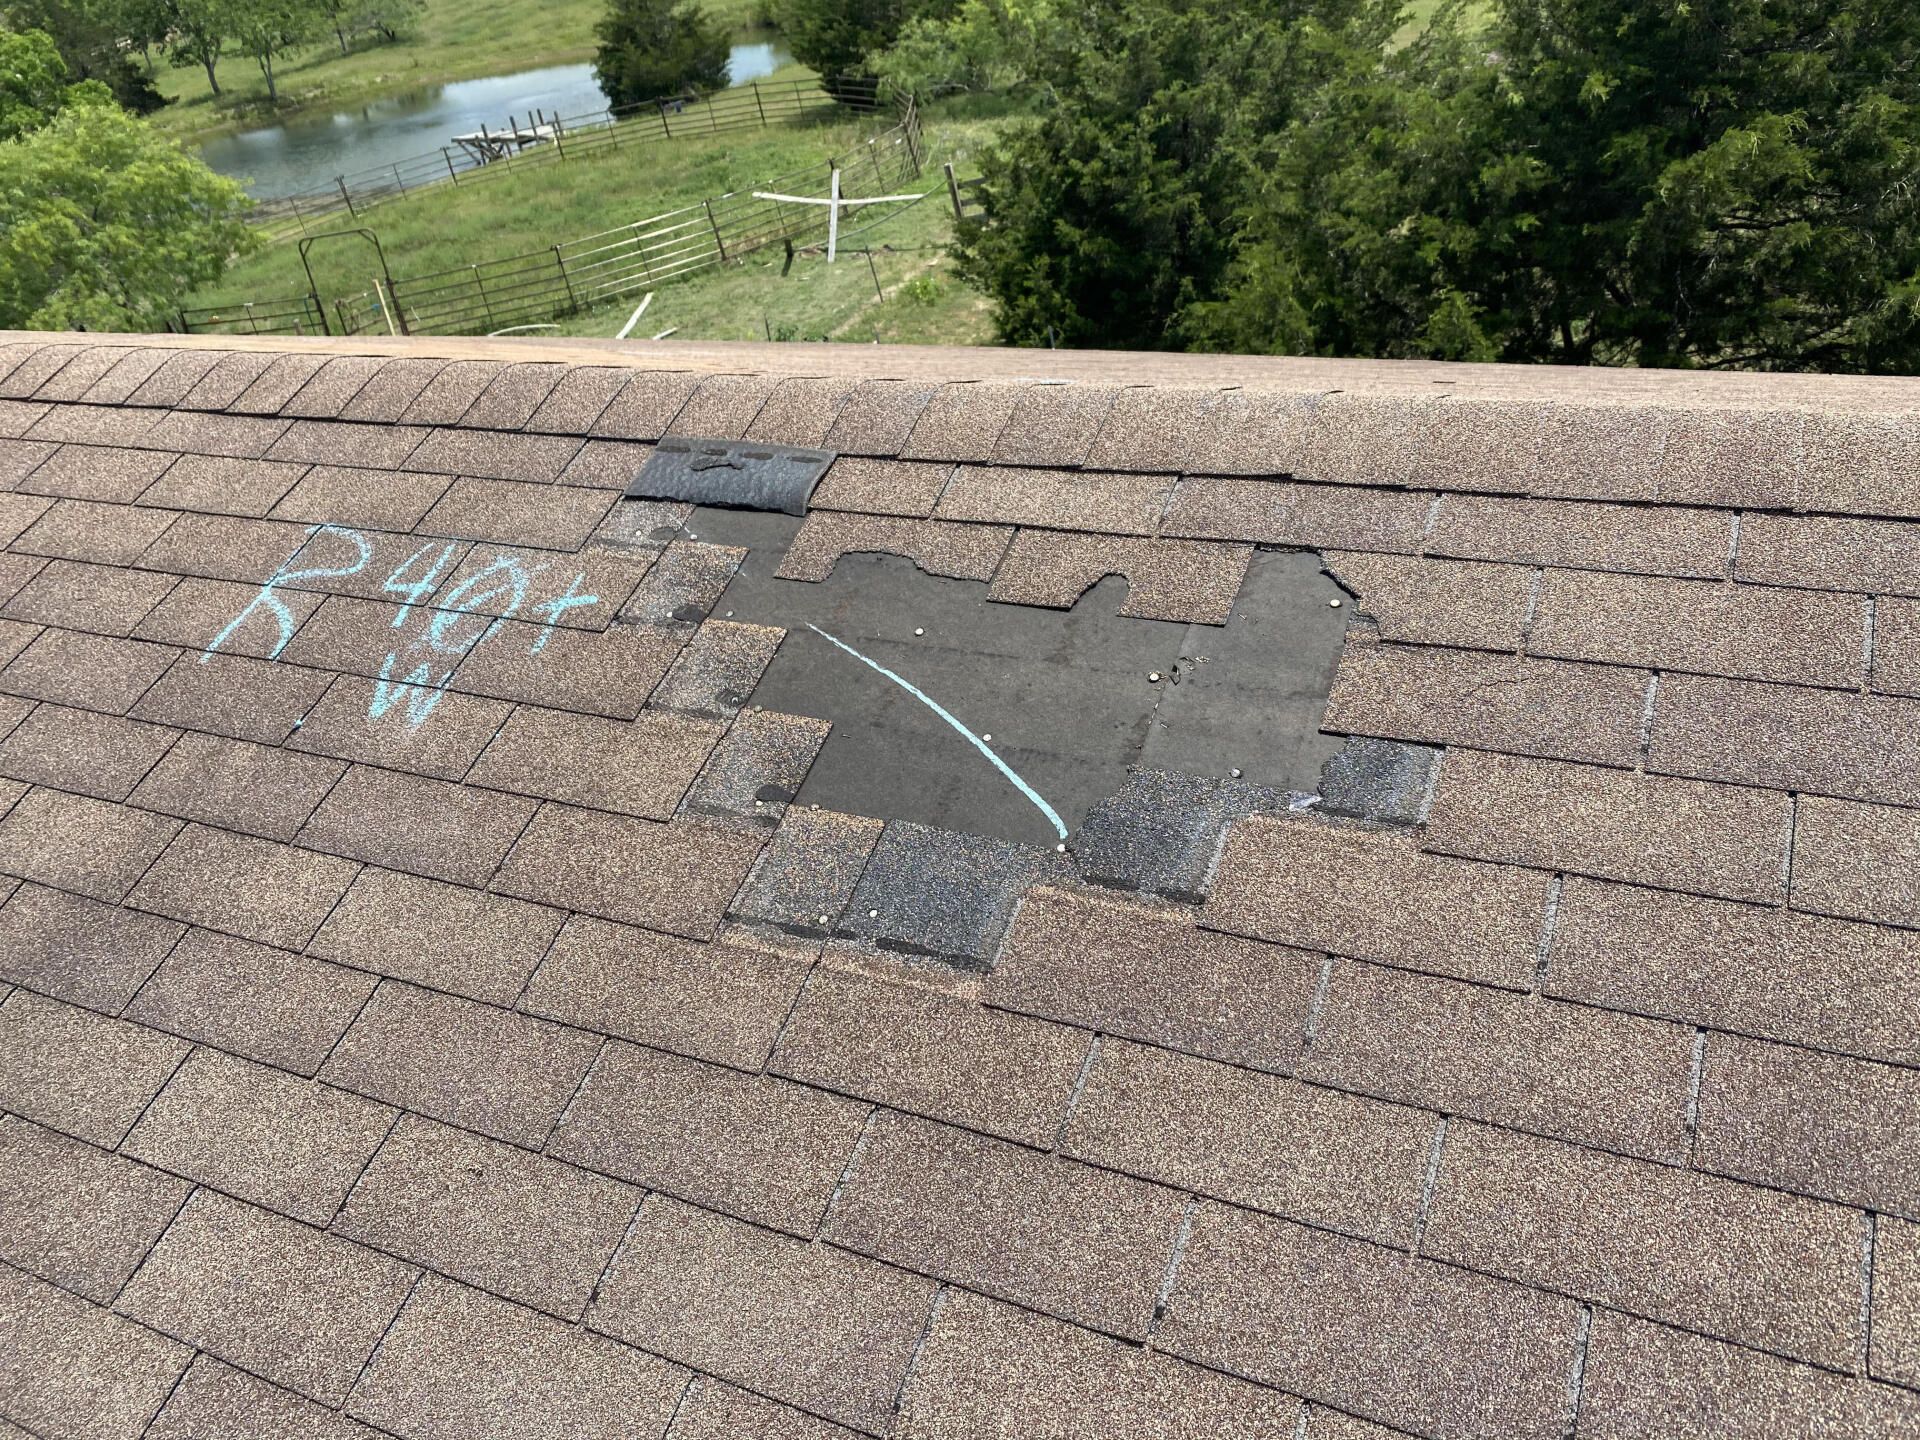 Austin Roof Repair